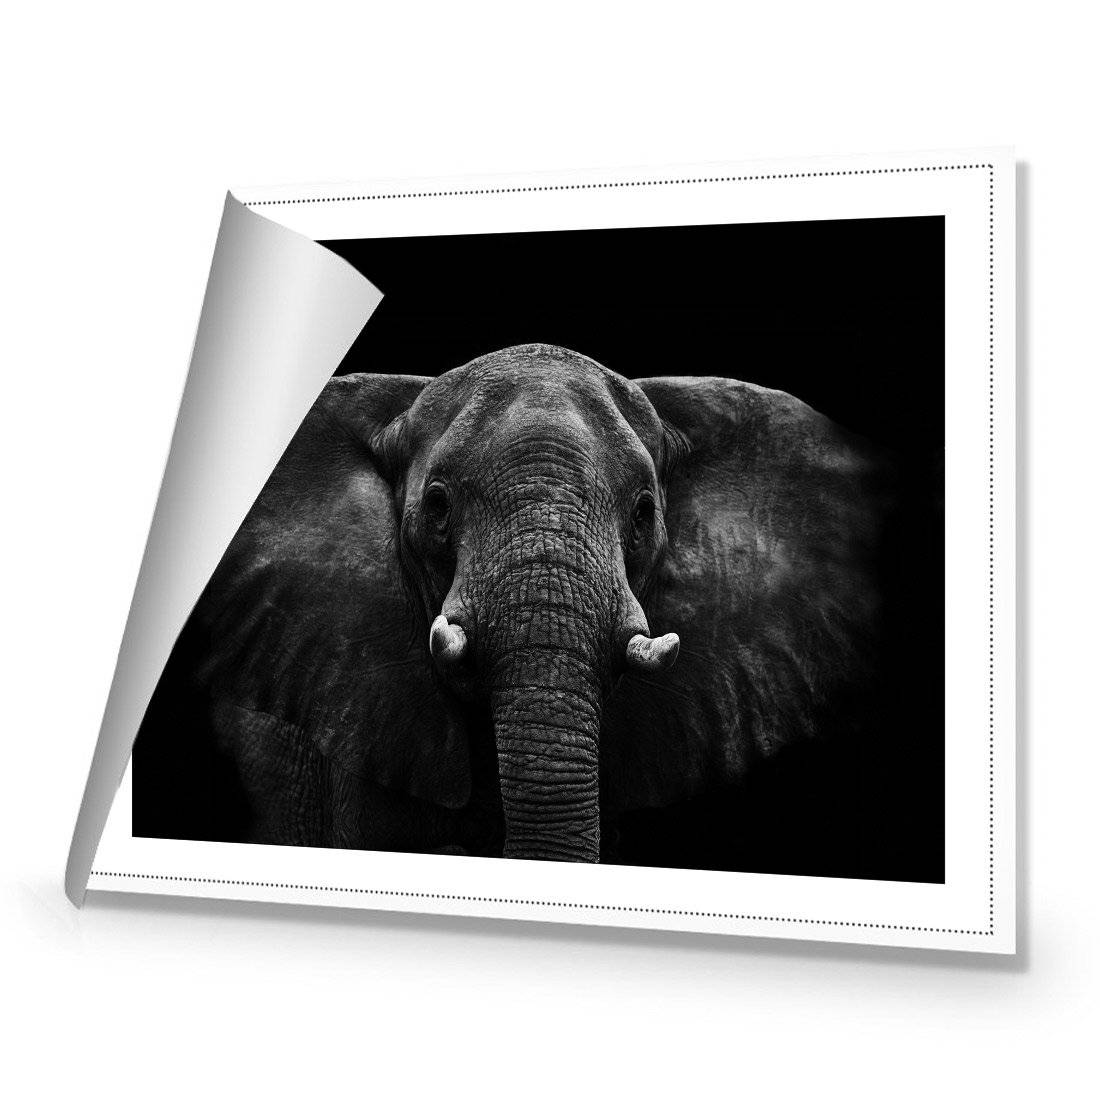 Regal Elephant Canvas Art-Canvas-Wall Art Designs-45x30cm-Rolled Canvas-Wall Art Designs